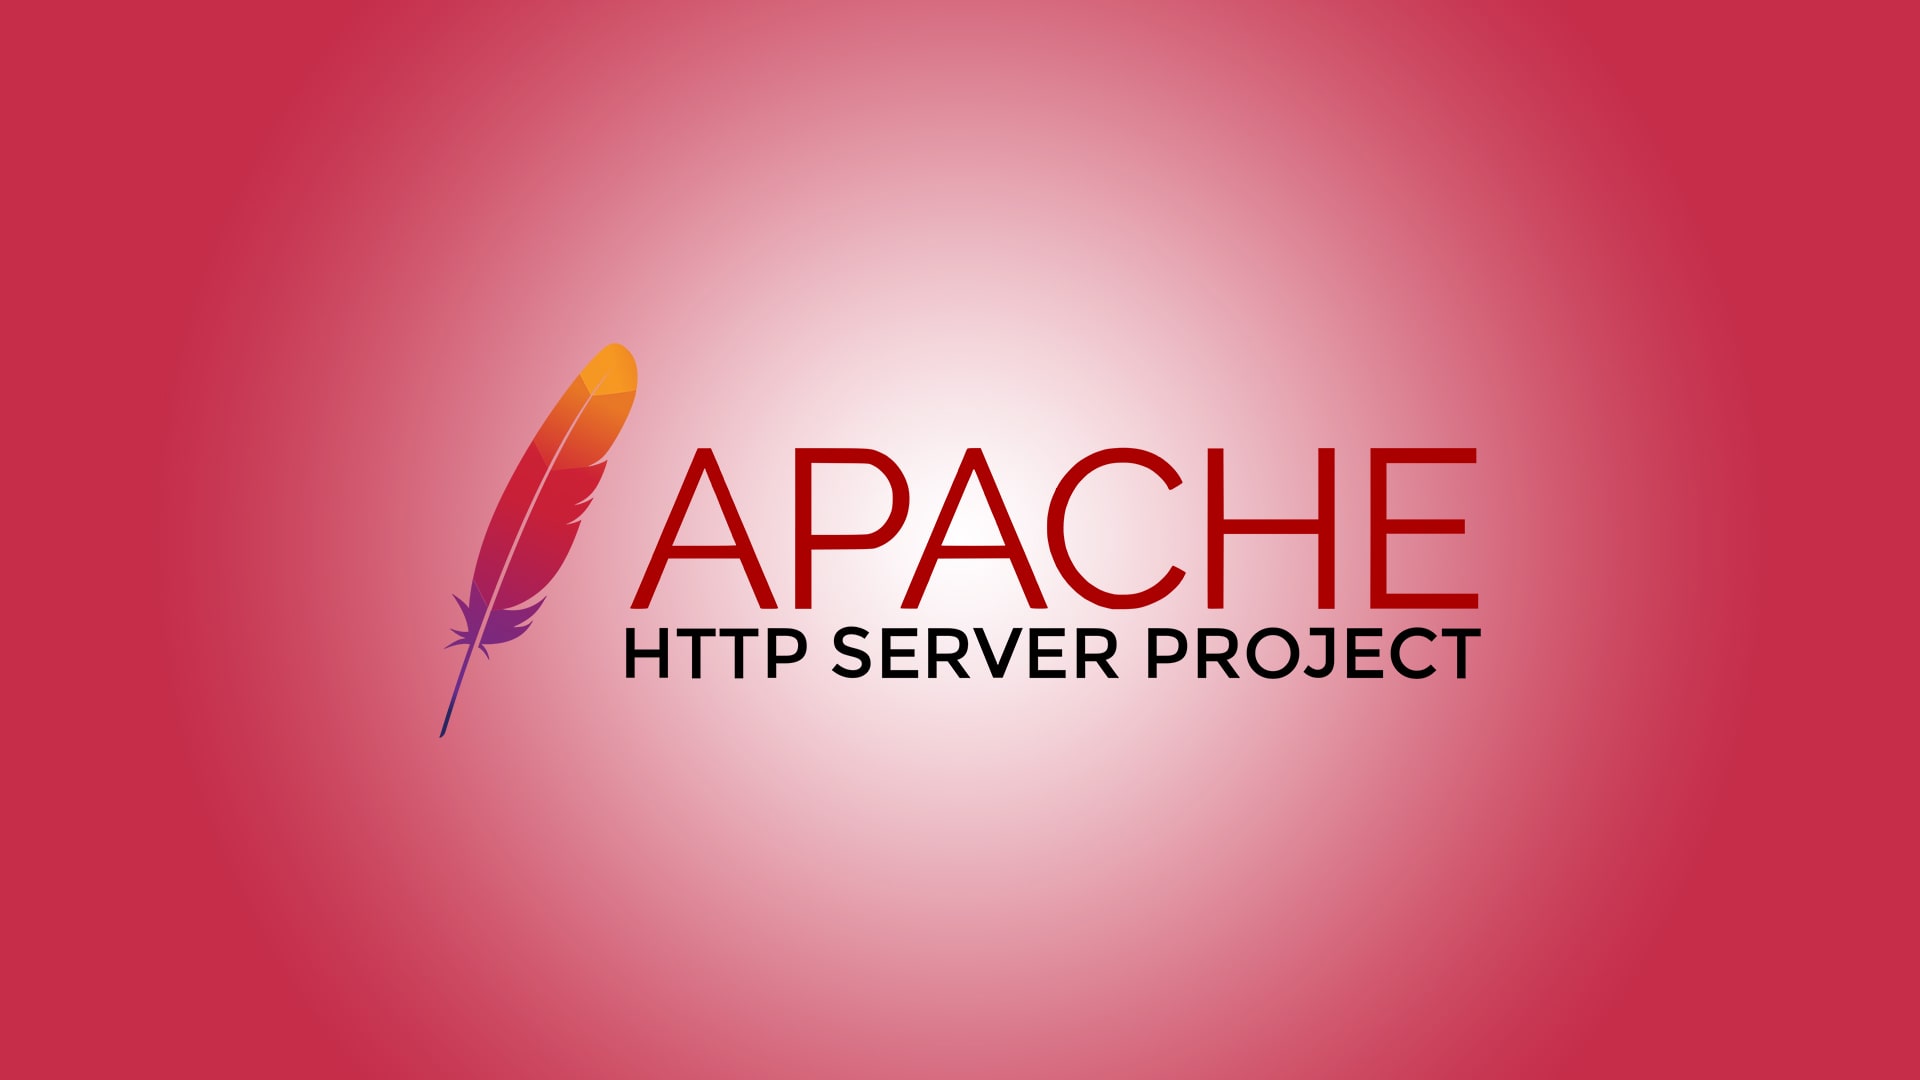 Install Apache on Linux: Ubuntu, Debian, Fedora, RHEL, CentOS, etc.